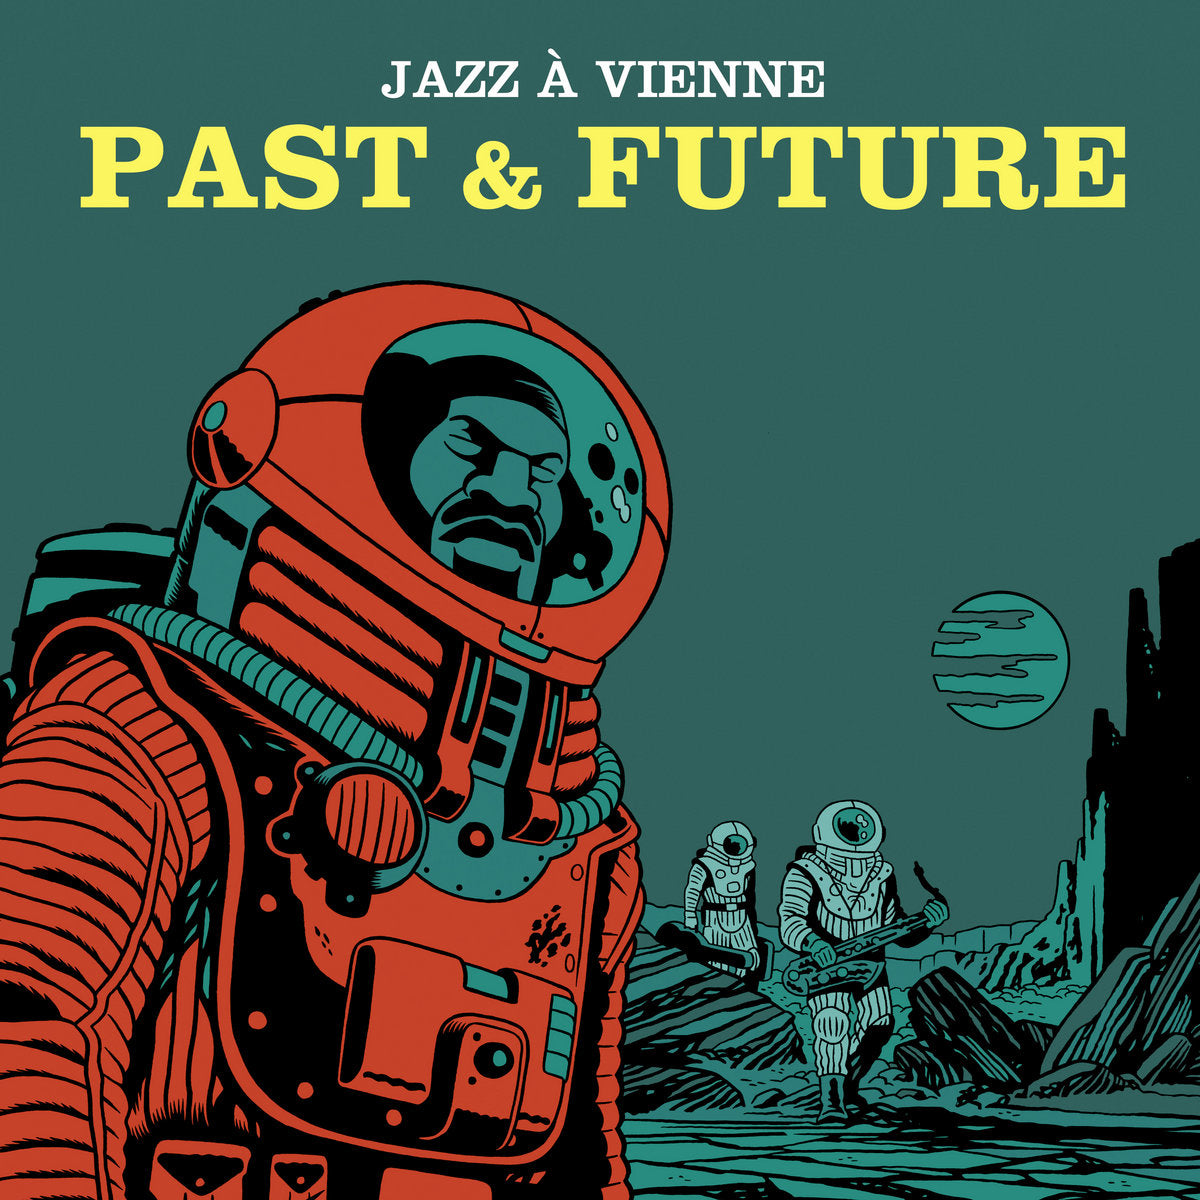 Jazz A Vienne: Jazz A Vienne Past & Future (Vinyl 2xLP)